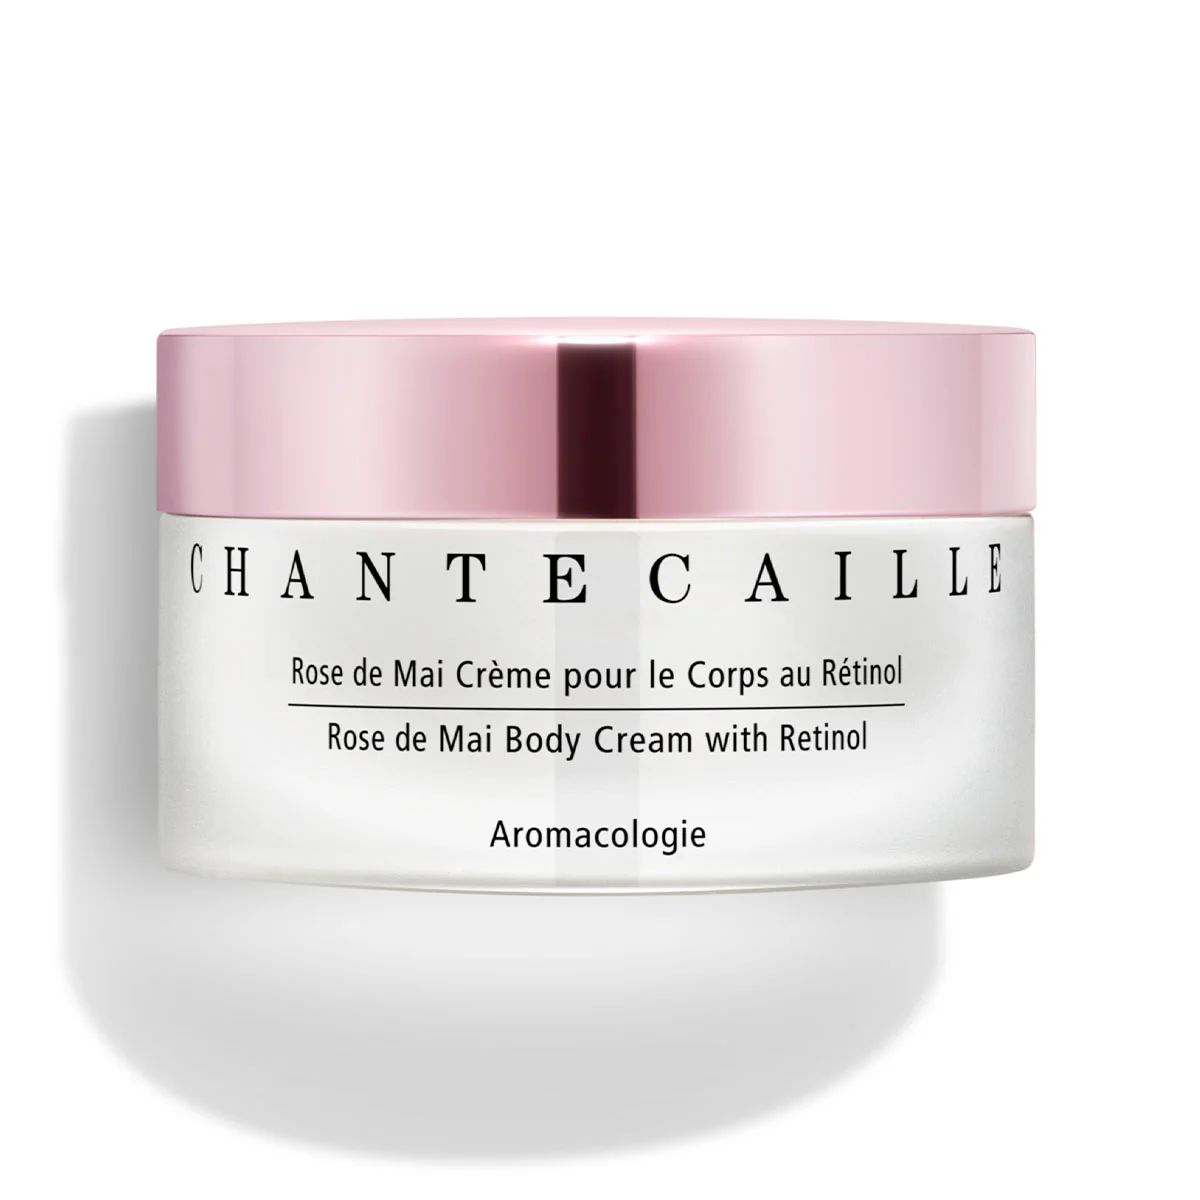 Rose de Mai Body Cream with Retinol | Chantecaille